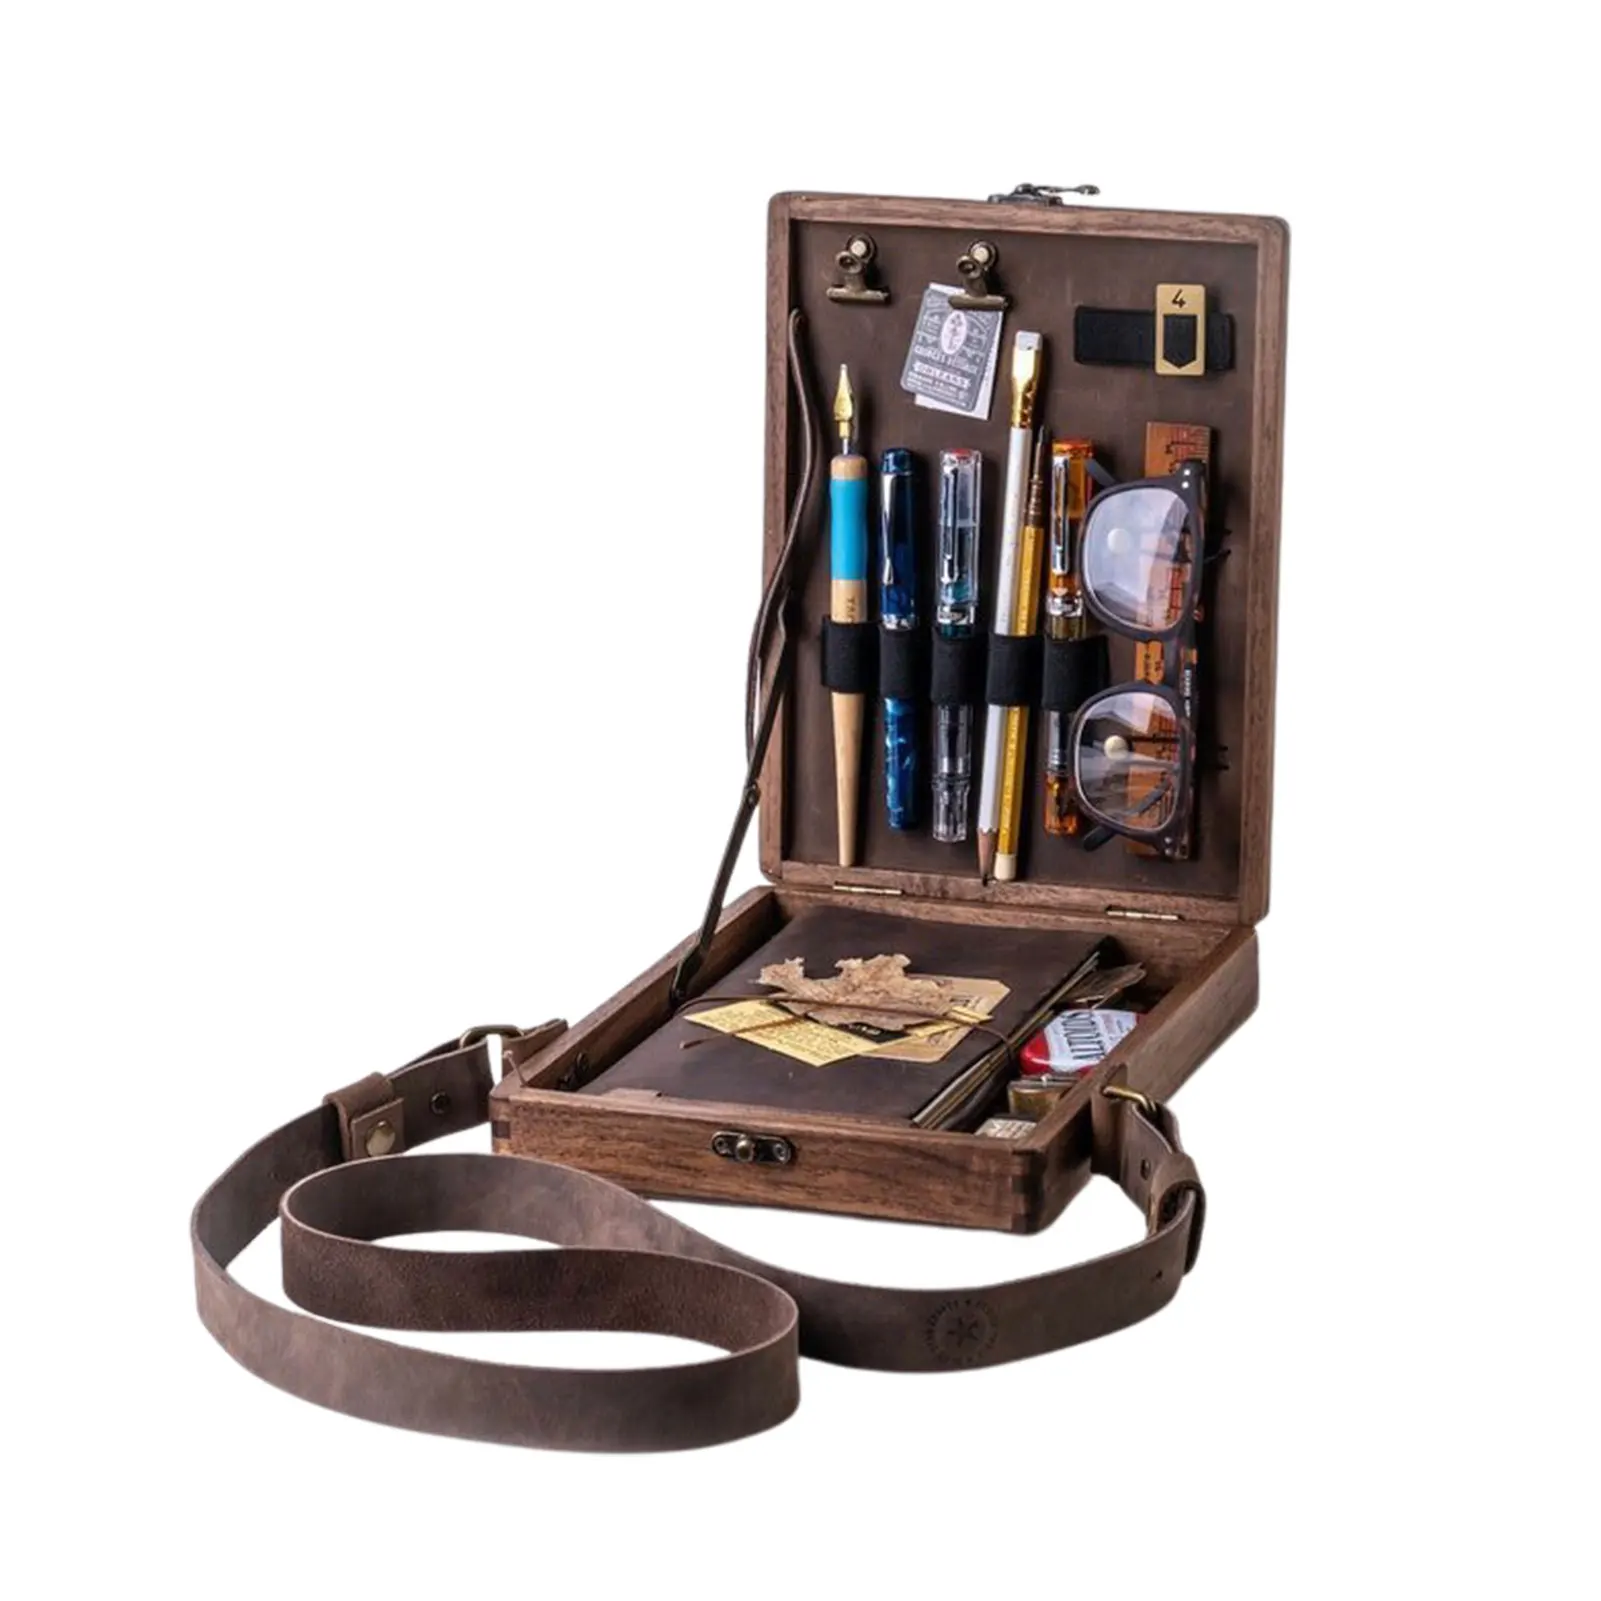 Writers Messenger Wood Box Retro Trend borsa a tracolla A5 valigetta da esterno in legno Home Office Decor Art Gift Handbags